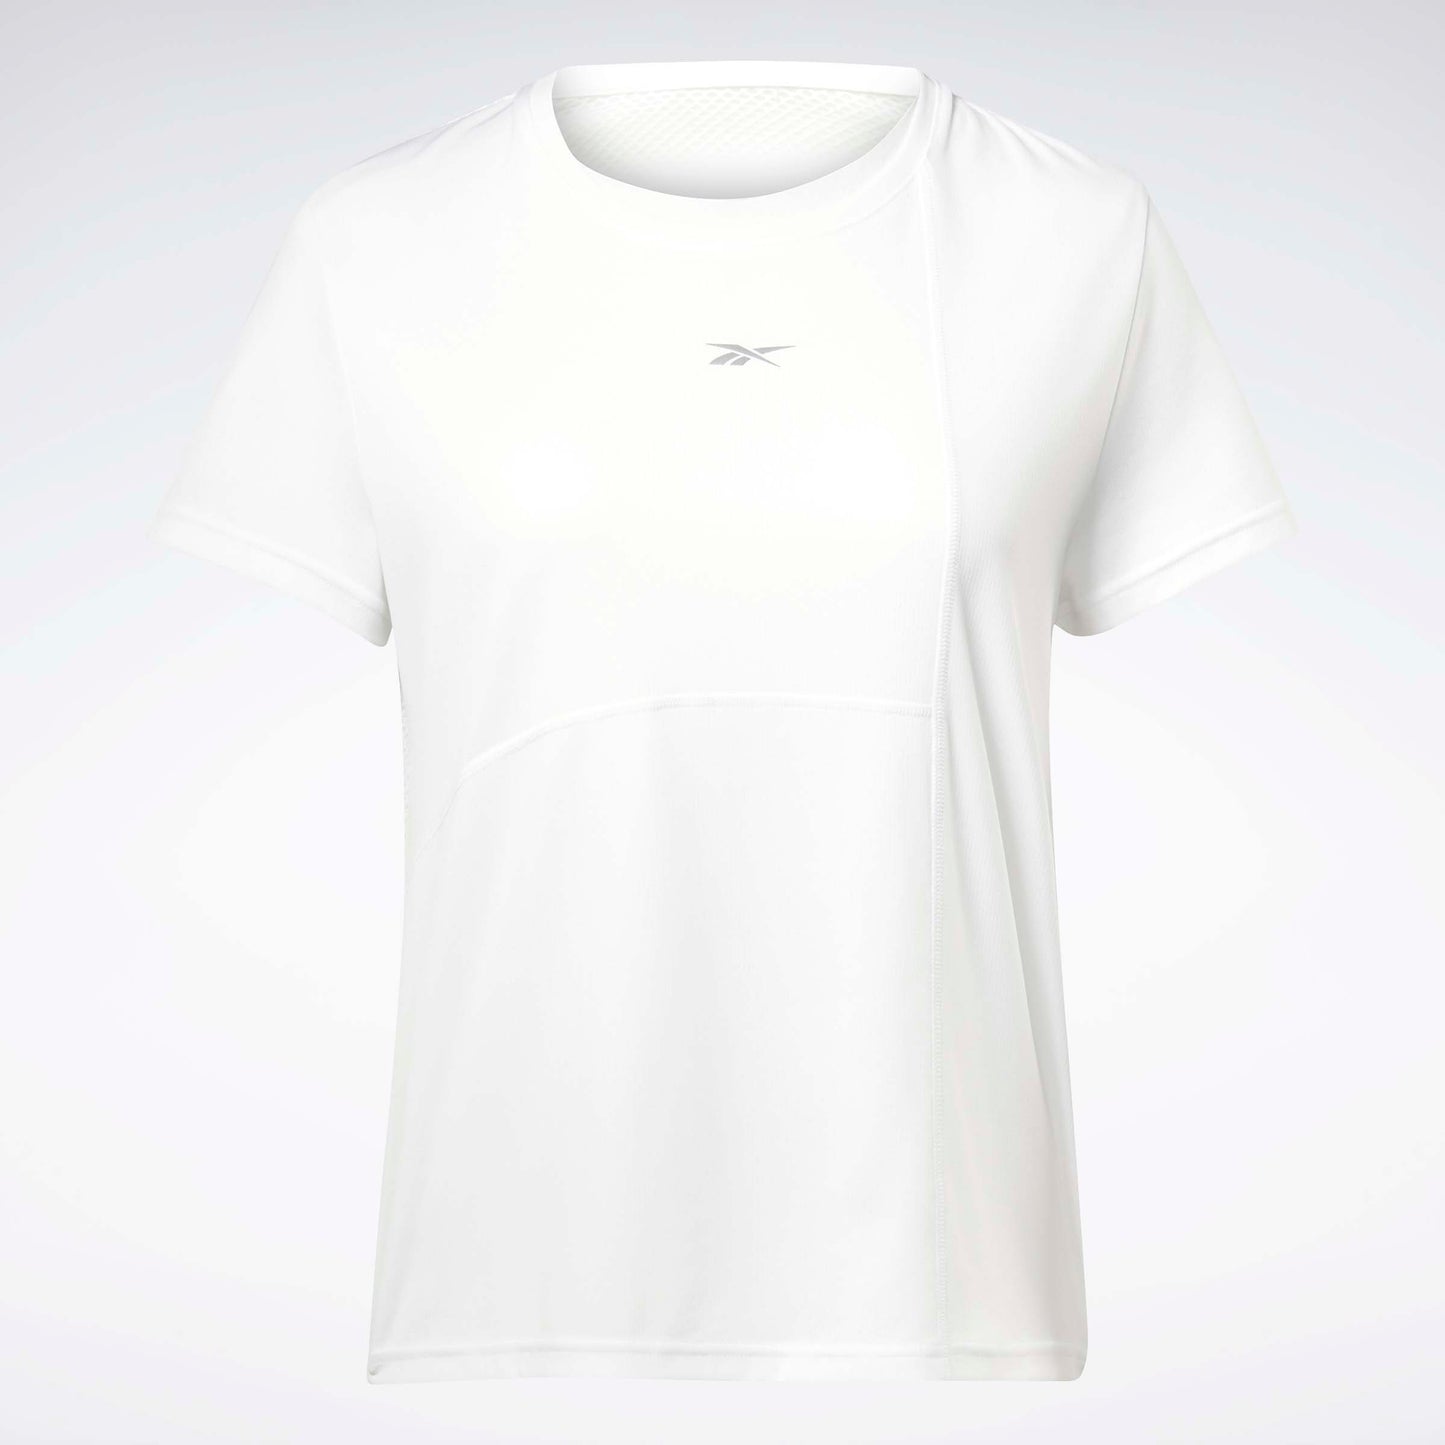 Running Speedwick T-Shirt White/White